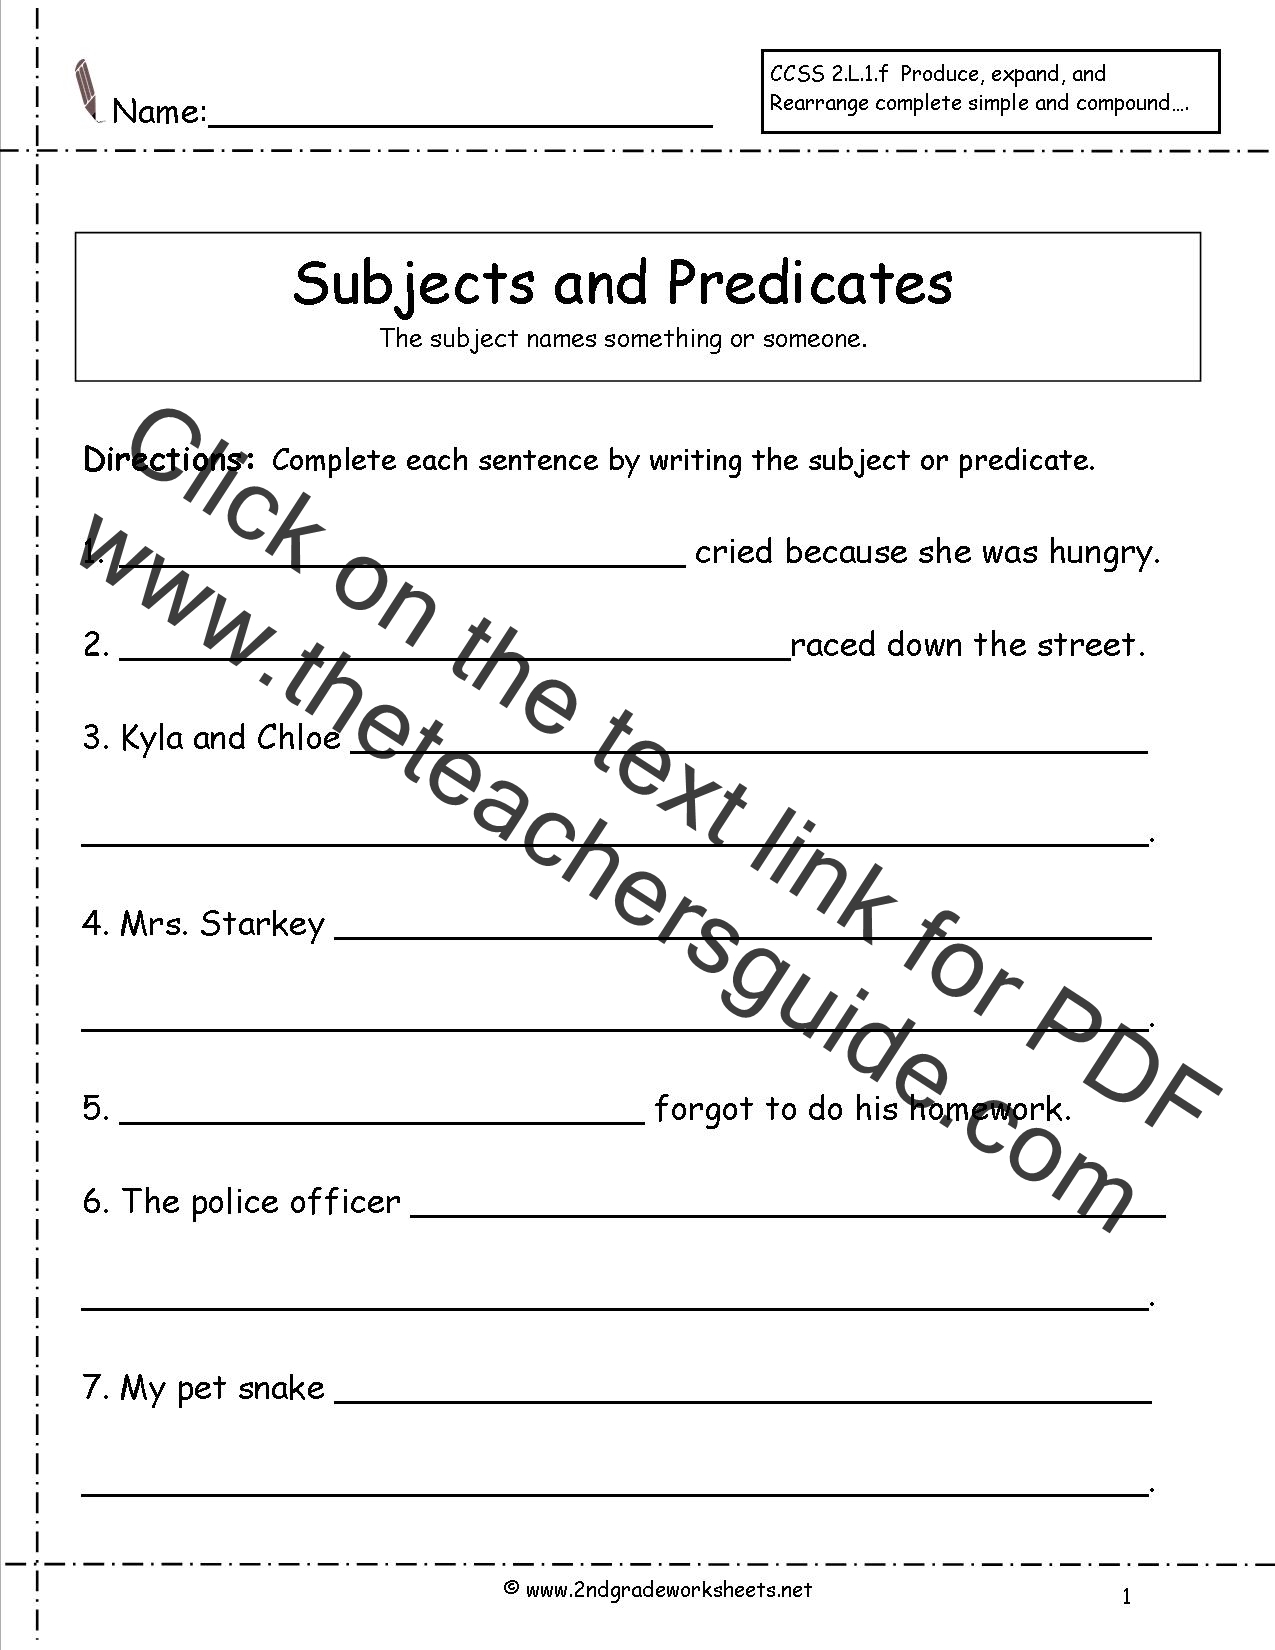 Second Grade Sentences Worksheets CCSS 2 L 1 f Worksheets 